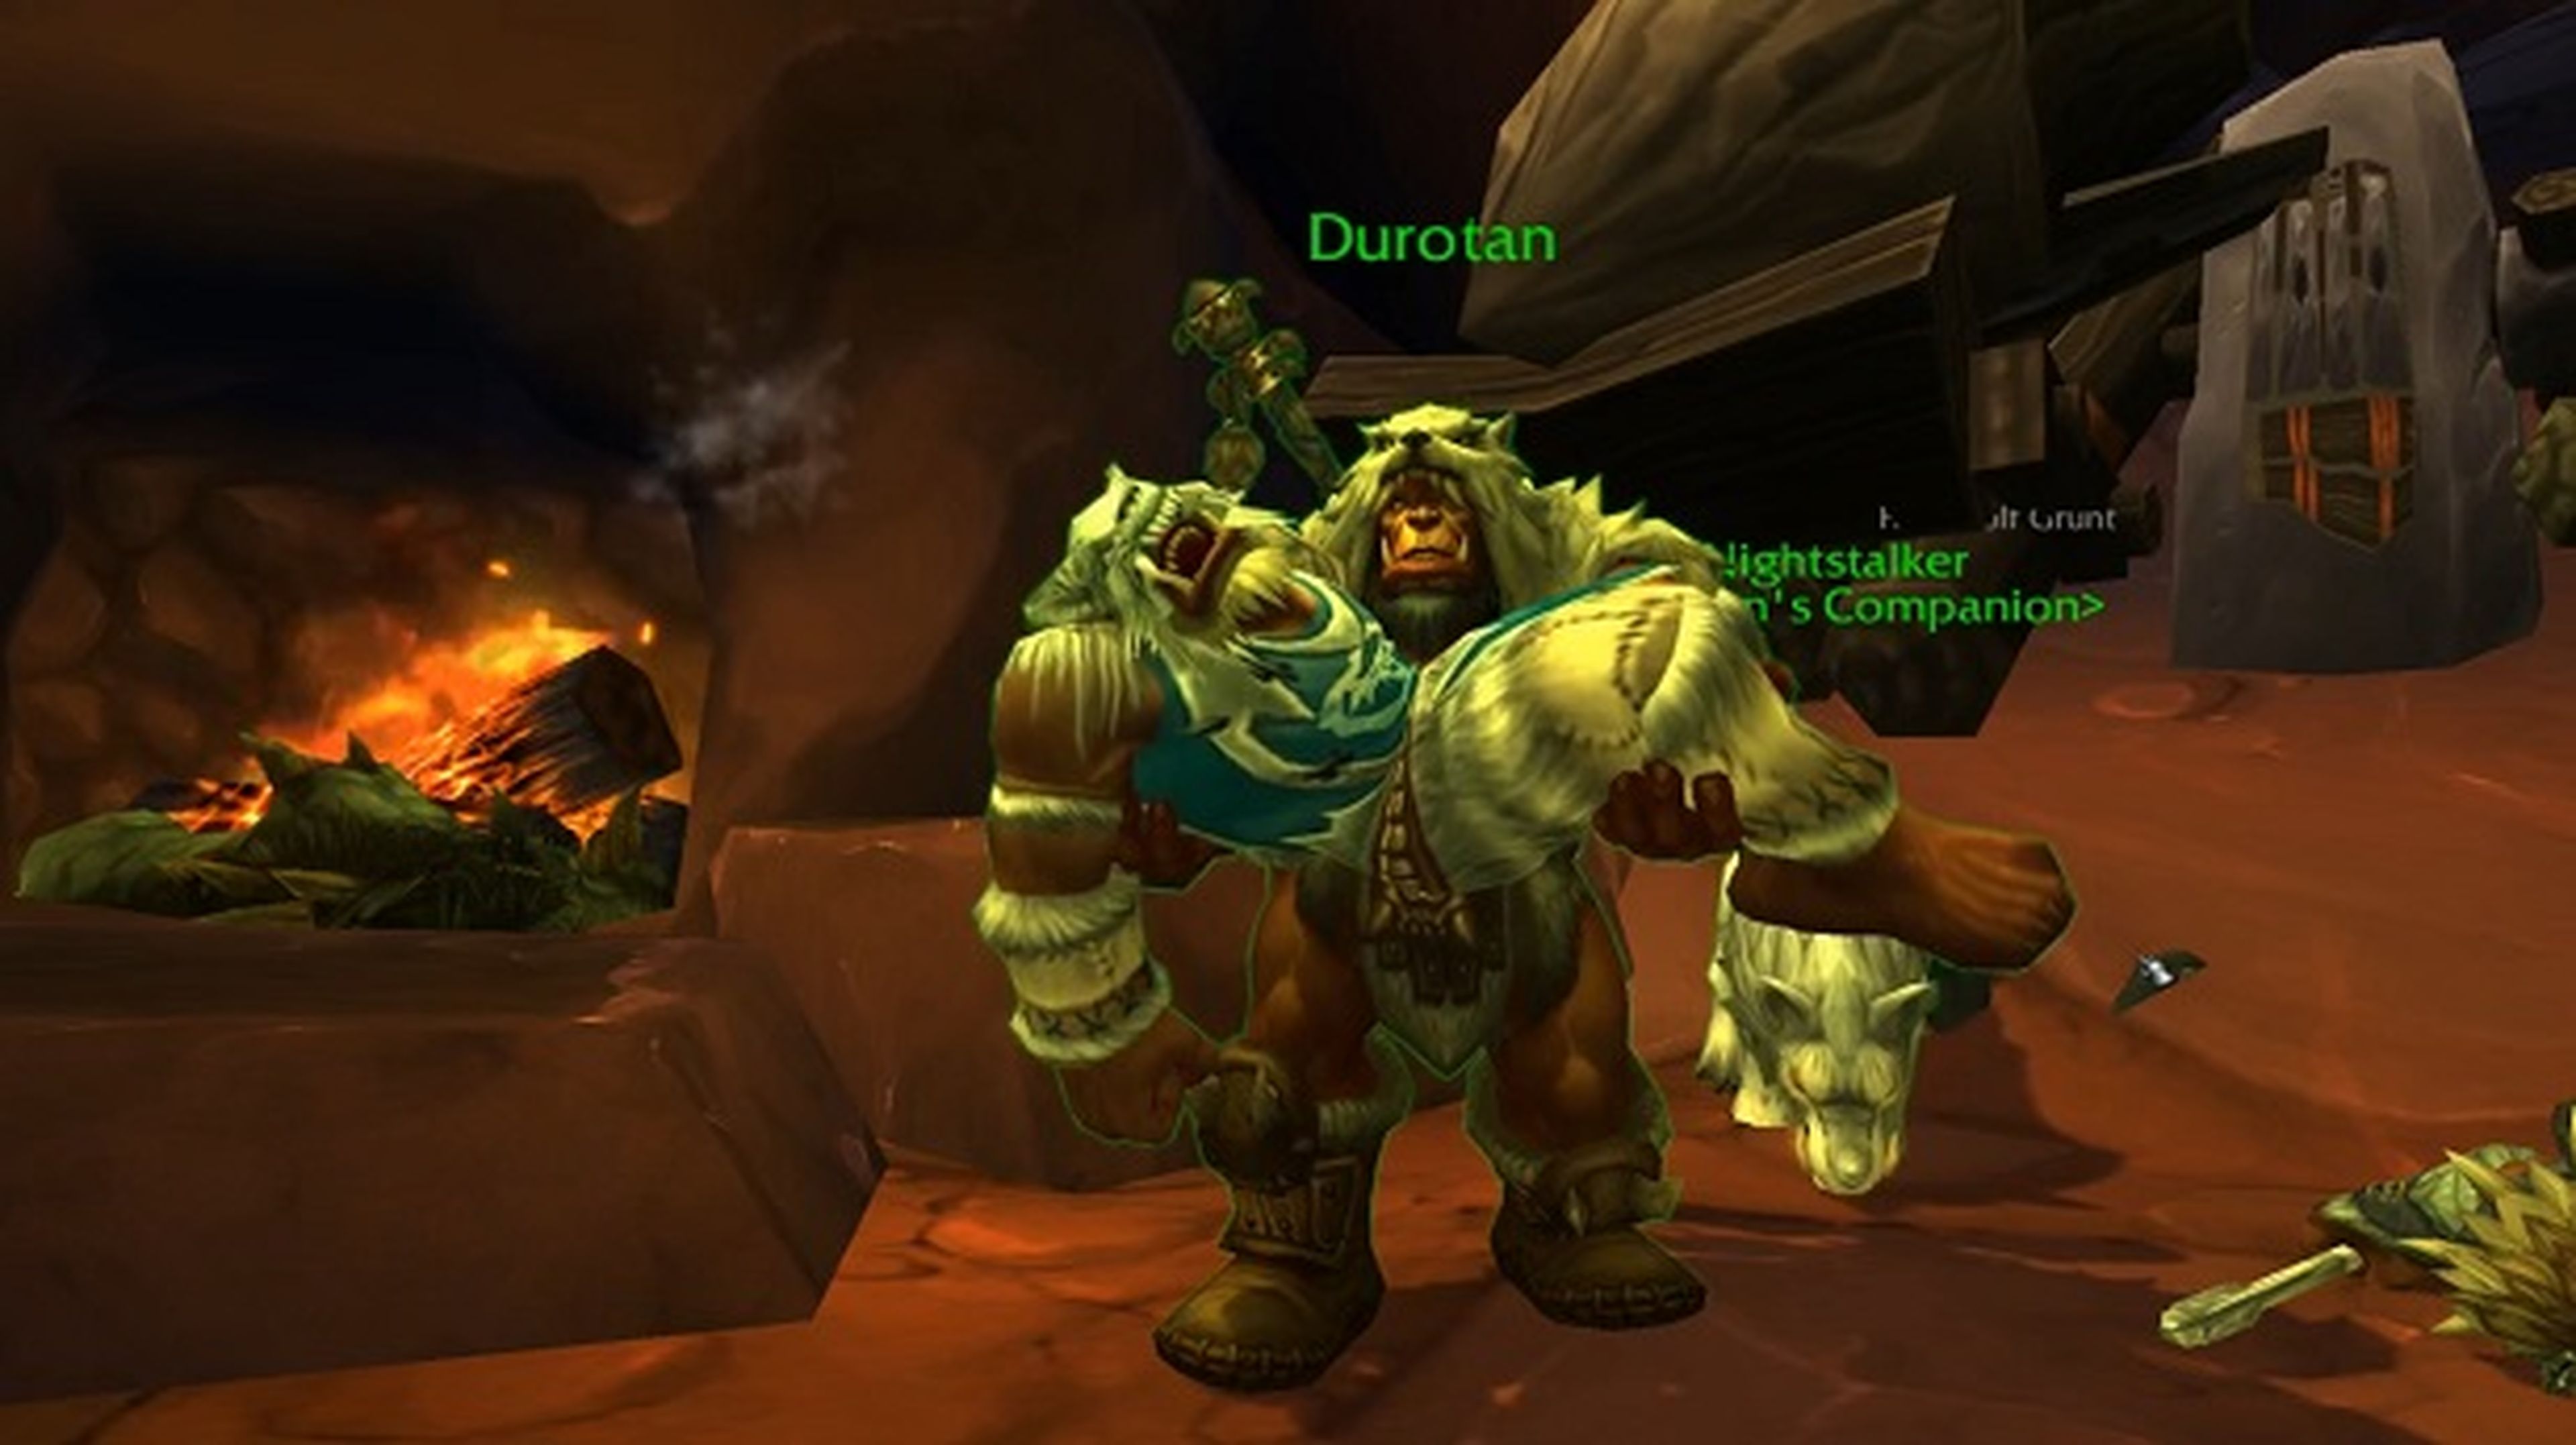 World of Warcraft: Warlords of Draenor duplicará la capacidad de sus reinos